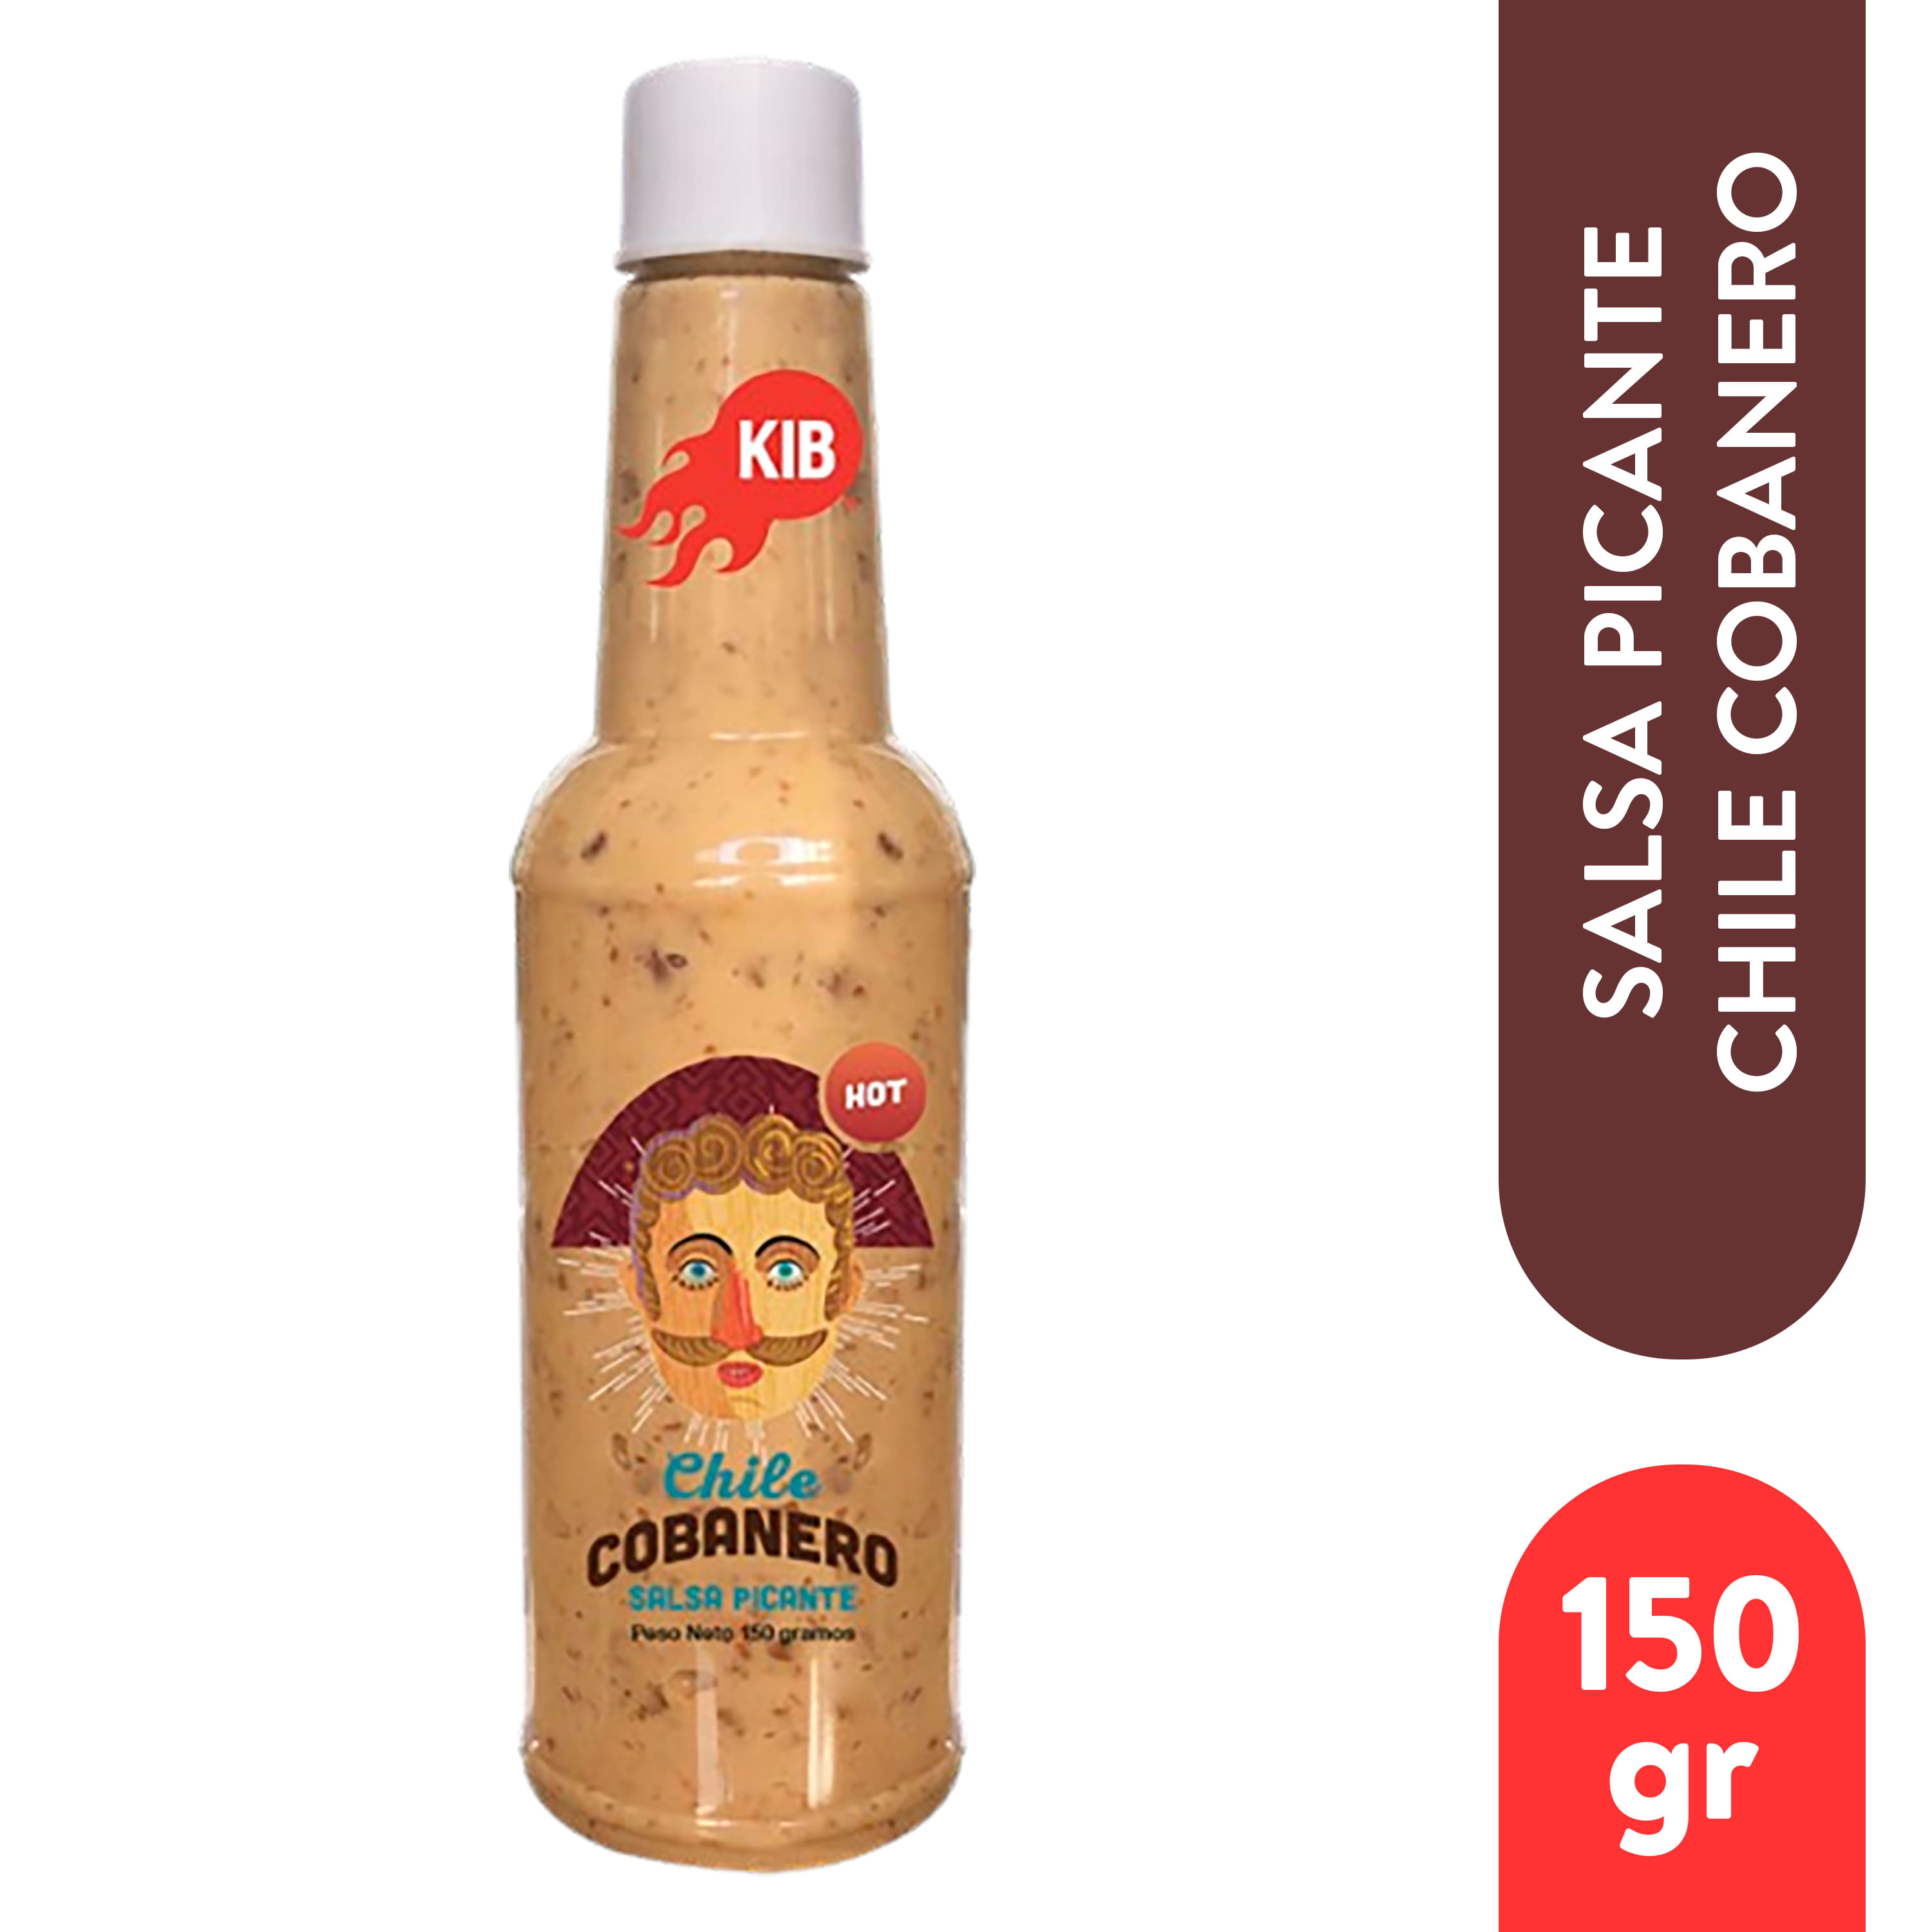 Salsa-Kib-Picante-Cobanero-150gr-1-30732